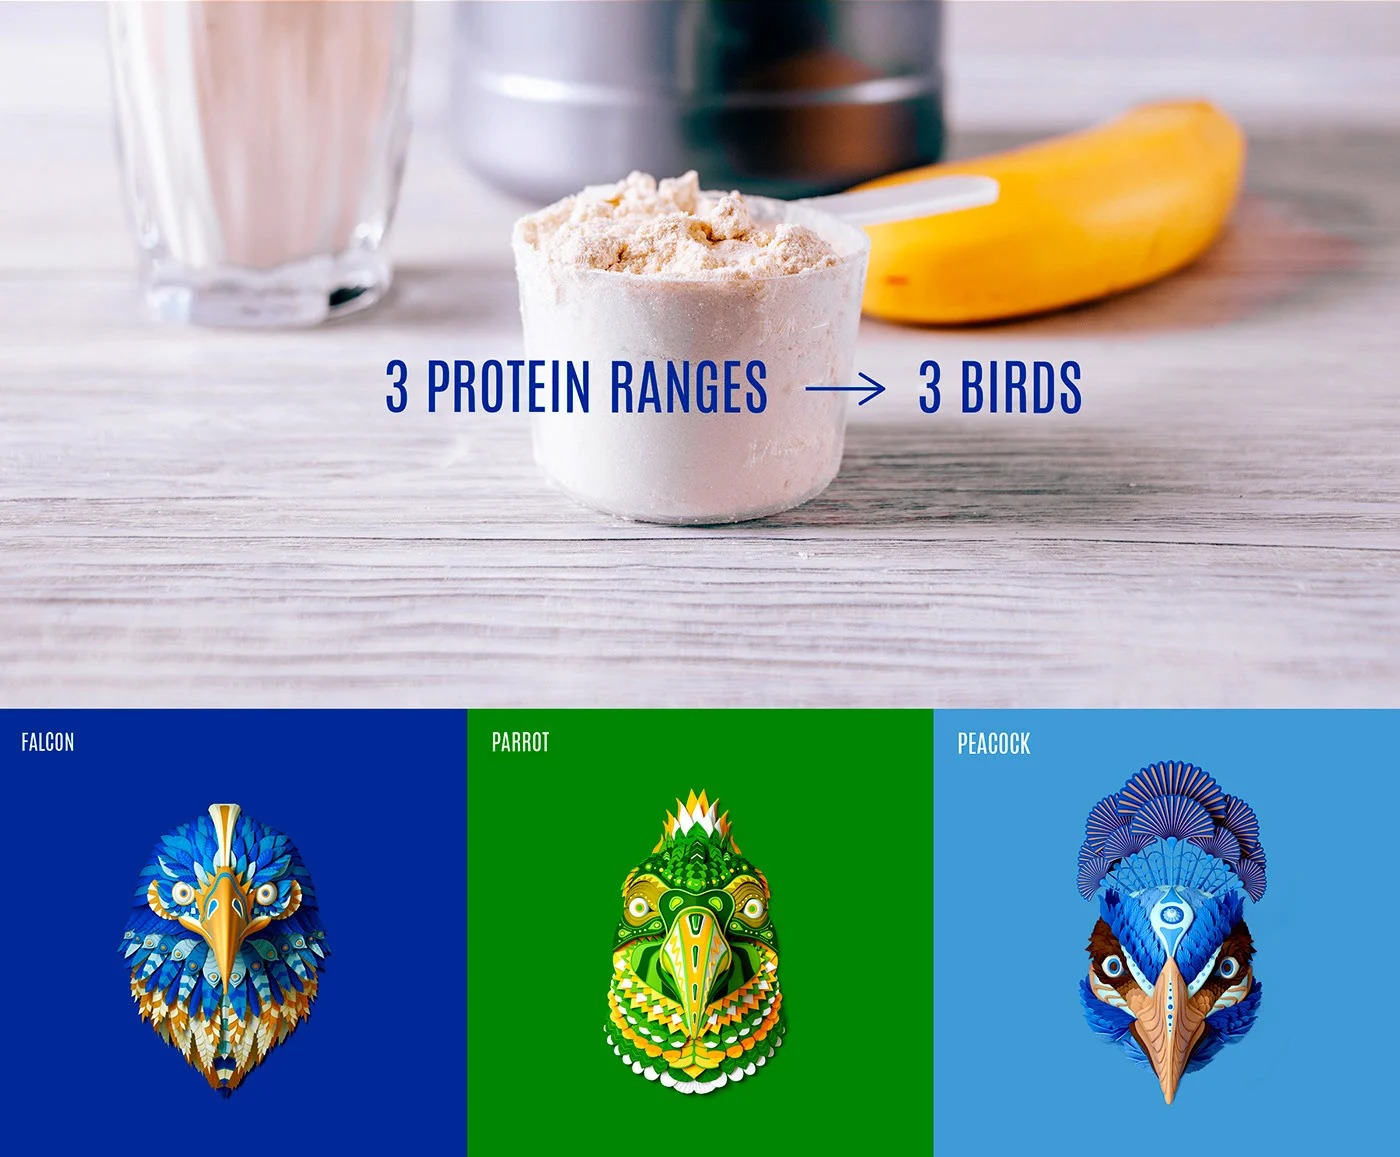 欣赏一组国外精美的食品包装设计作品，Birdman植物蛋白食物包装